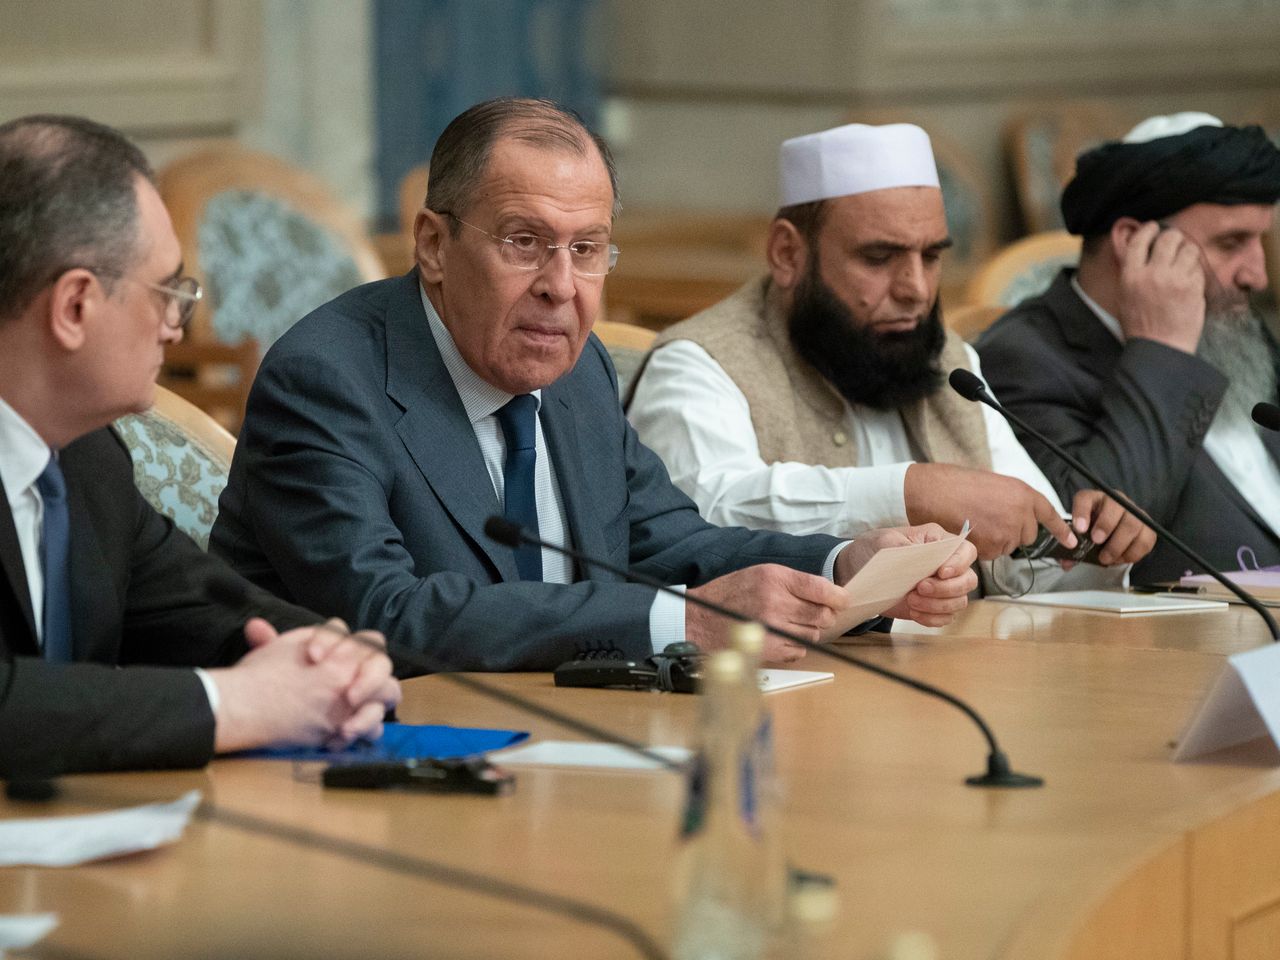 Rusia gjen aleat të ri, nënshkruan marrëveshje tregtie me talebanët